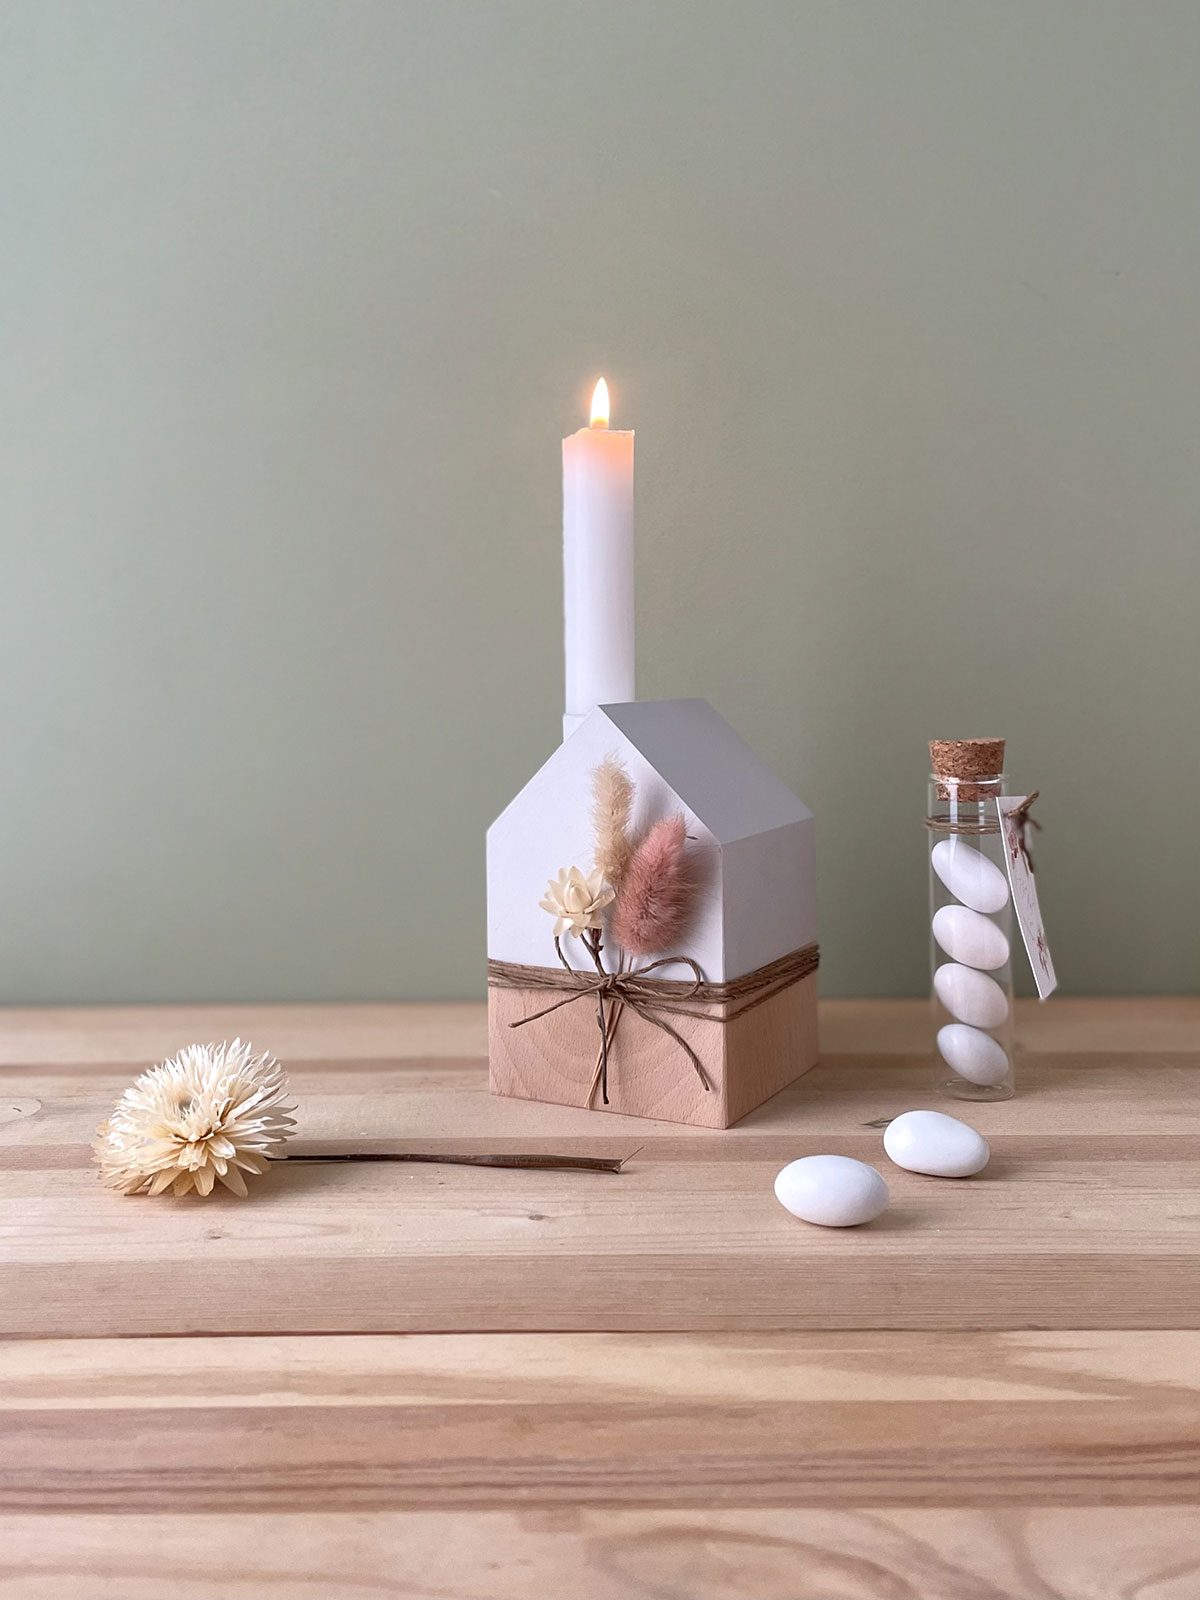 Casetta in legno di faggio con confetti in vasetto di vetro, candela e bastoncini inclusi